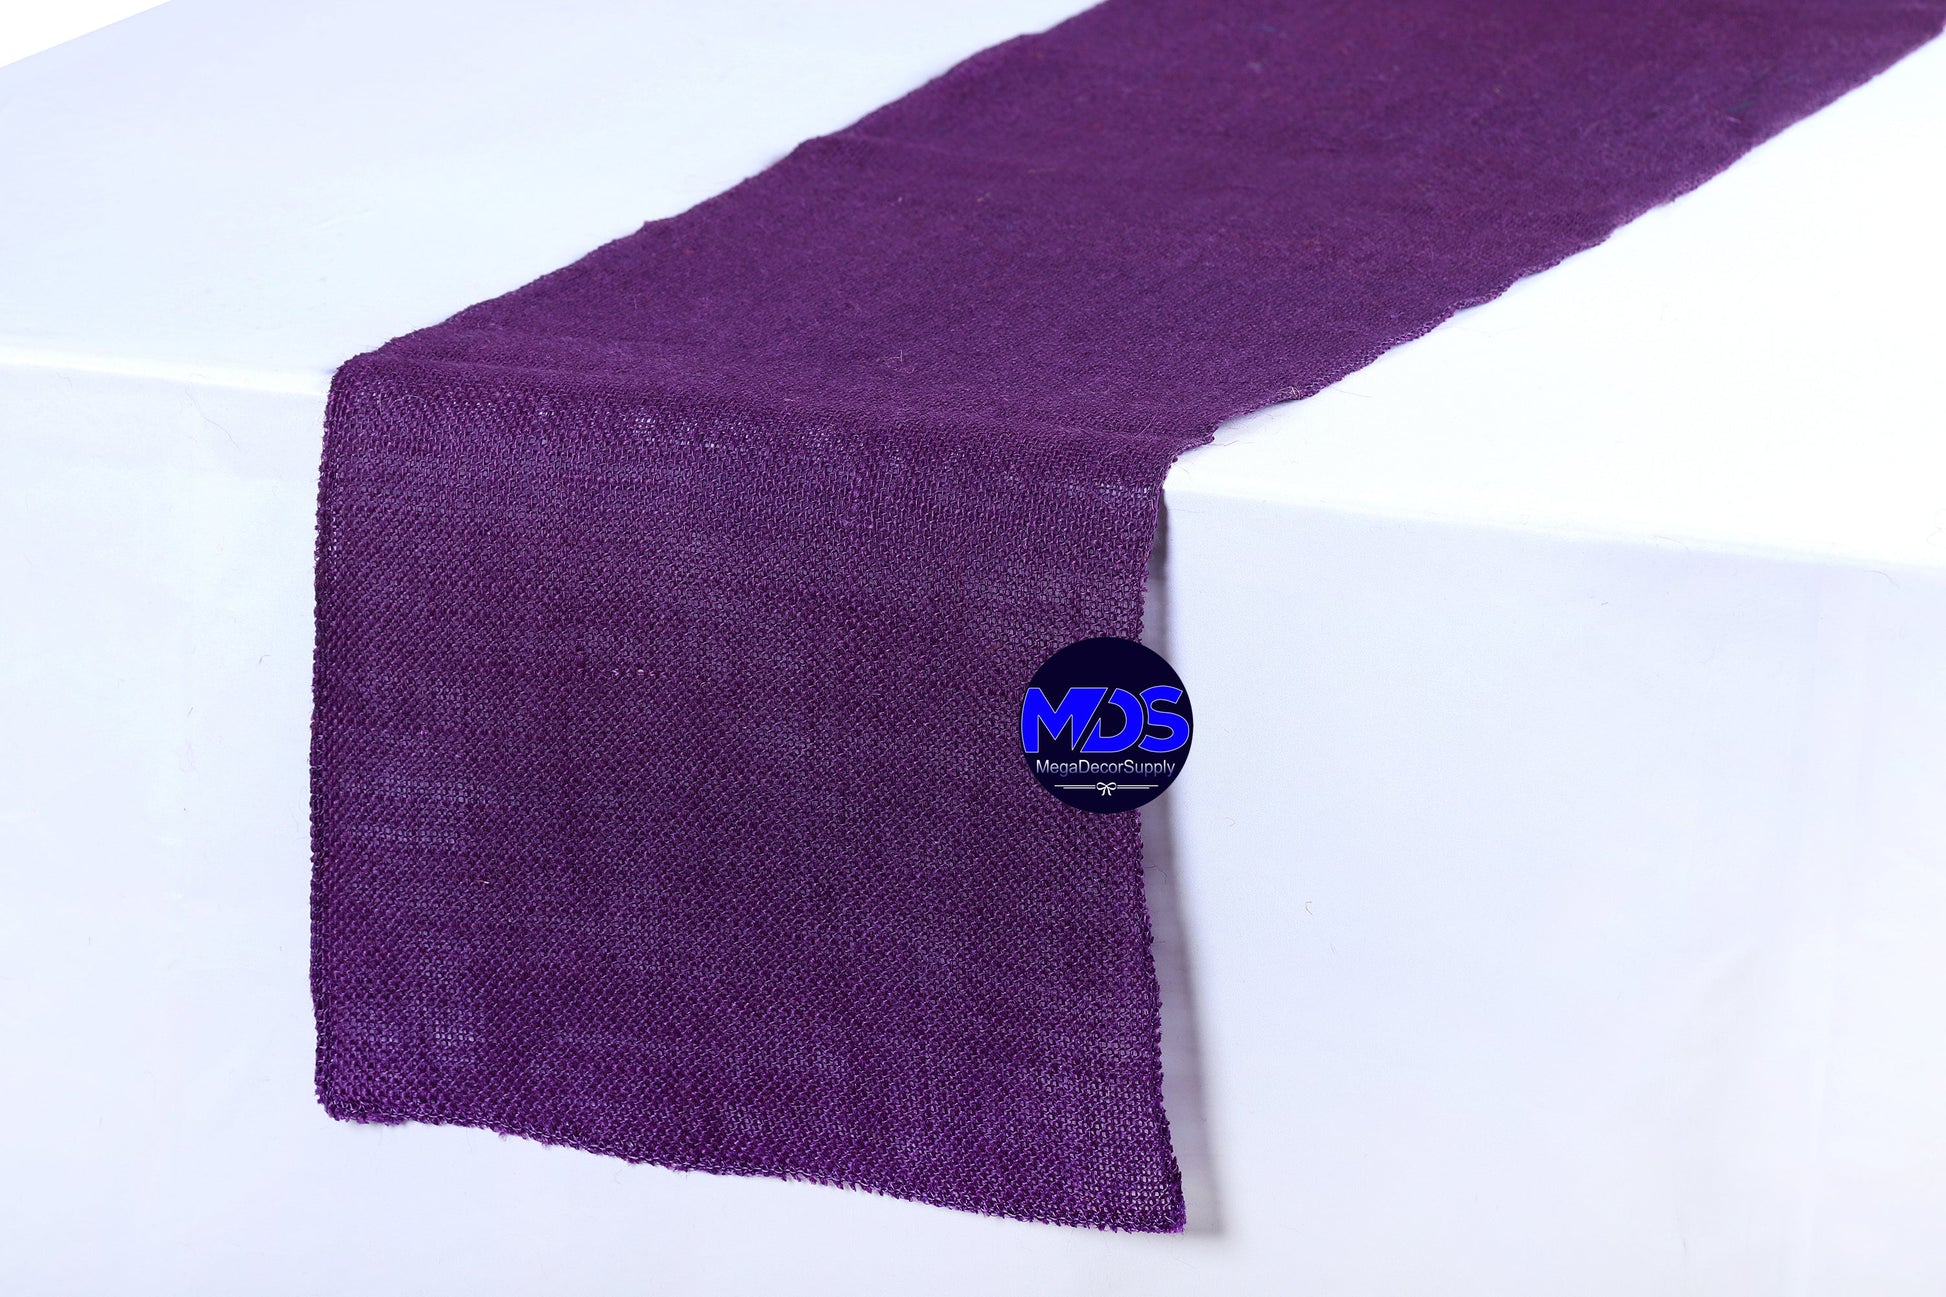 Cadbury Purple,2edcb25e-1068-4aef-8318-9e3349afa604